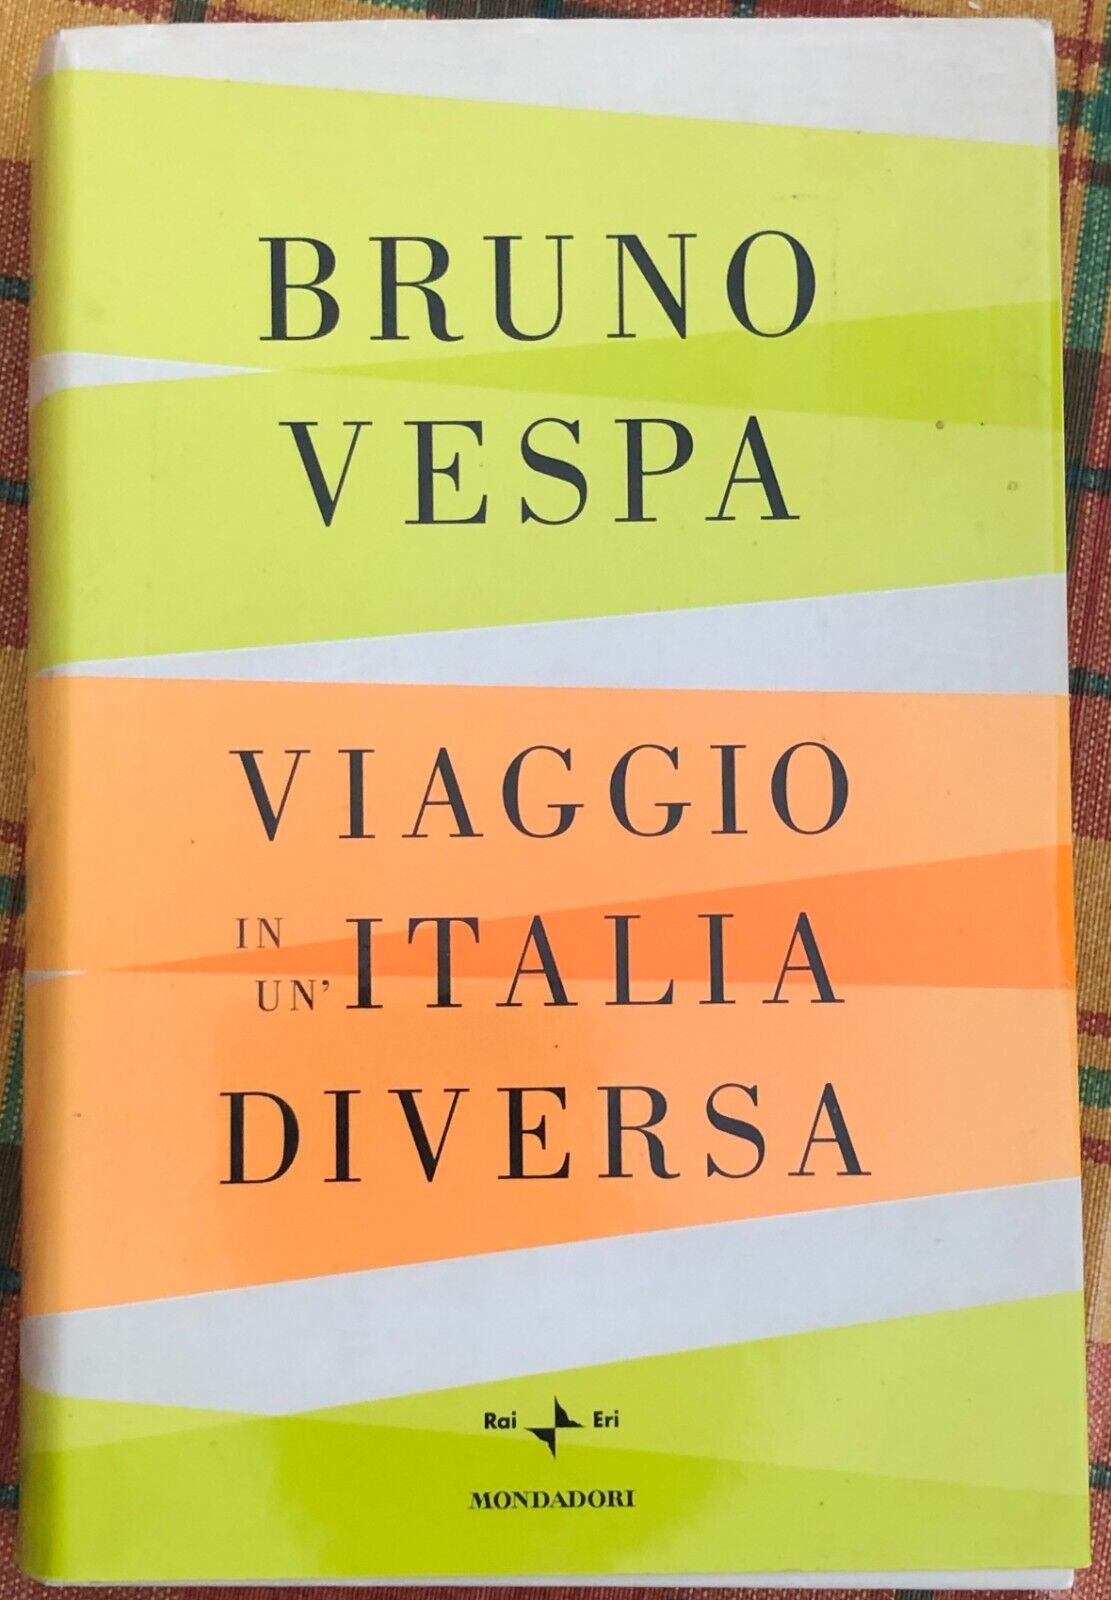  Viaggio in un?Italia diversa di Bruno Vespa, 2008, Mondadori